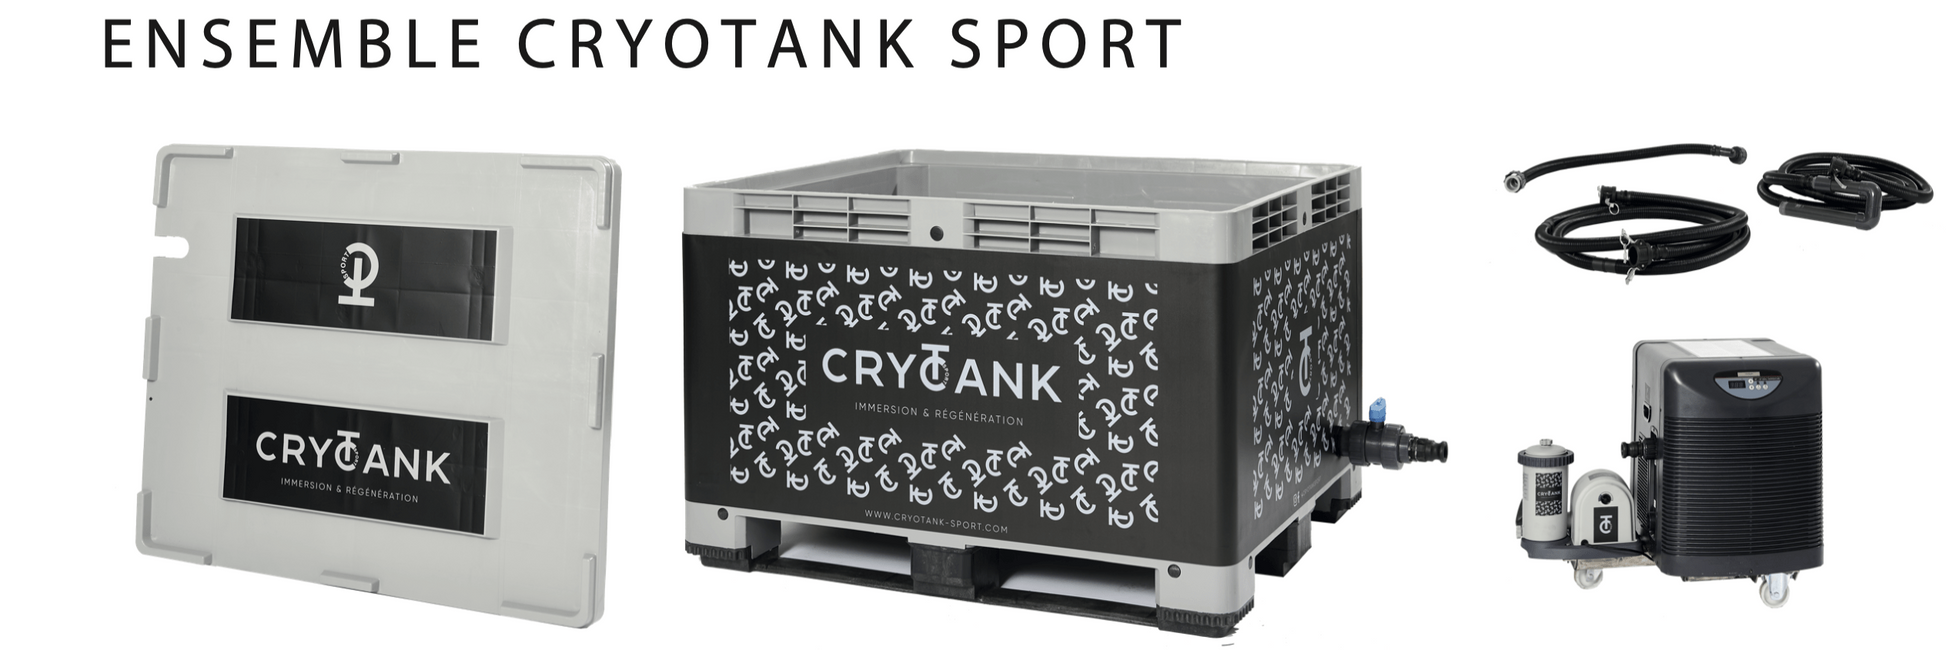 Cryotank Set